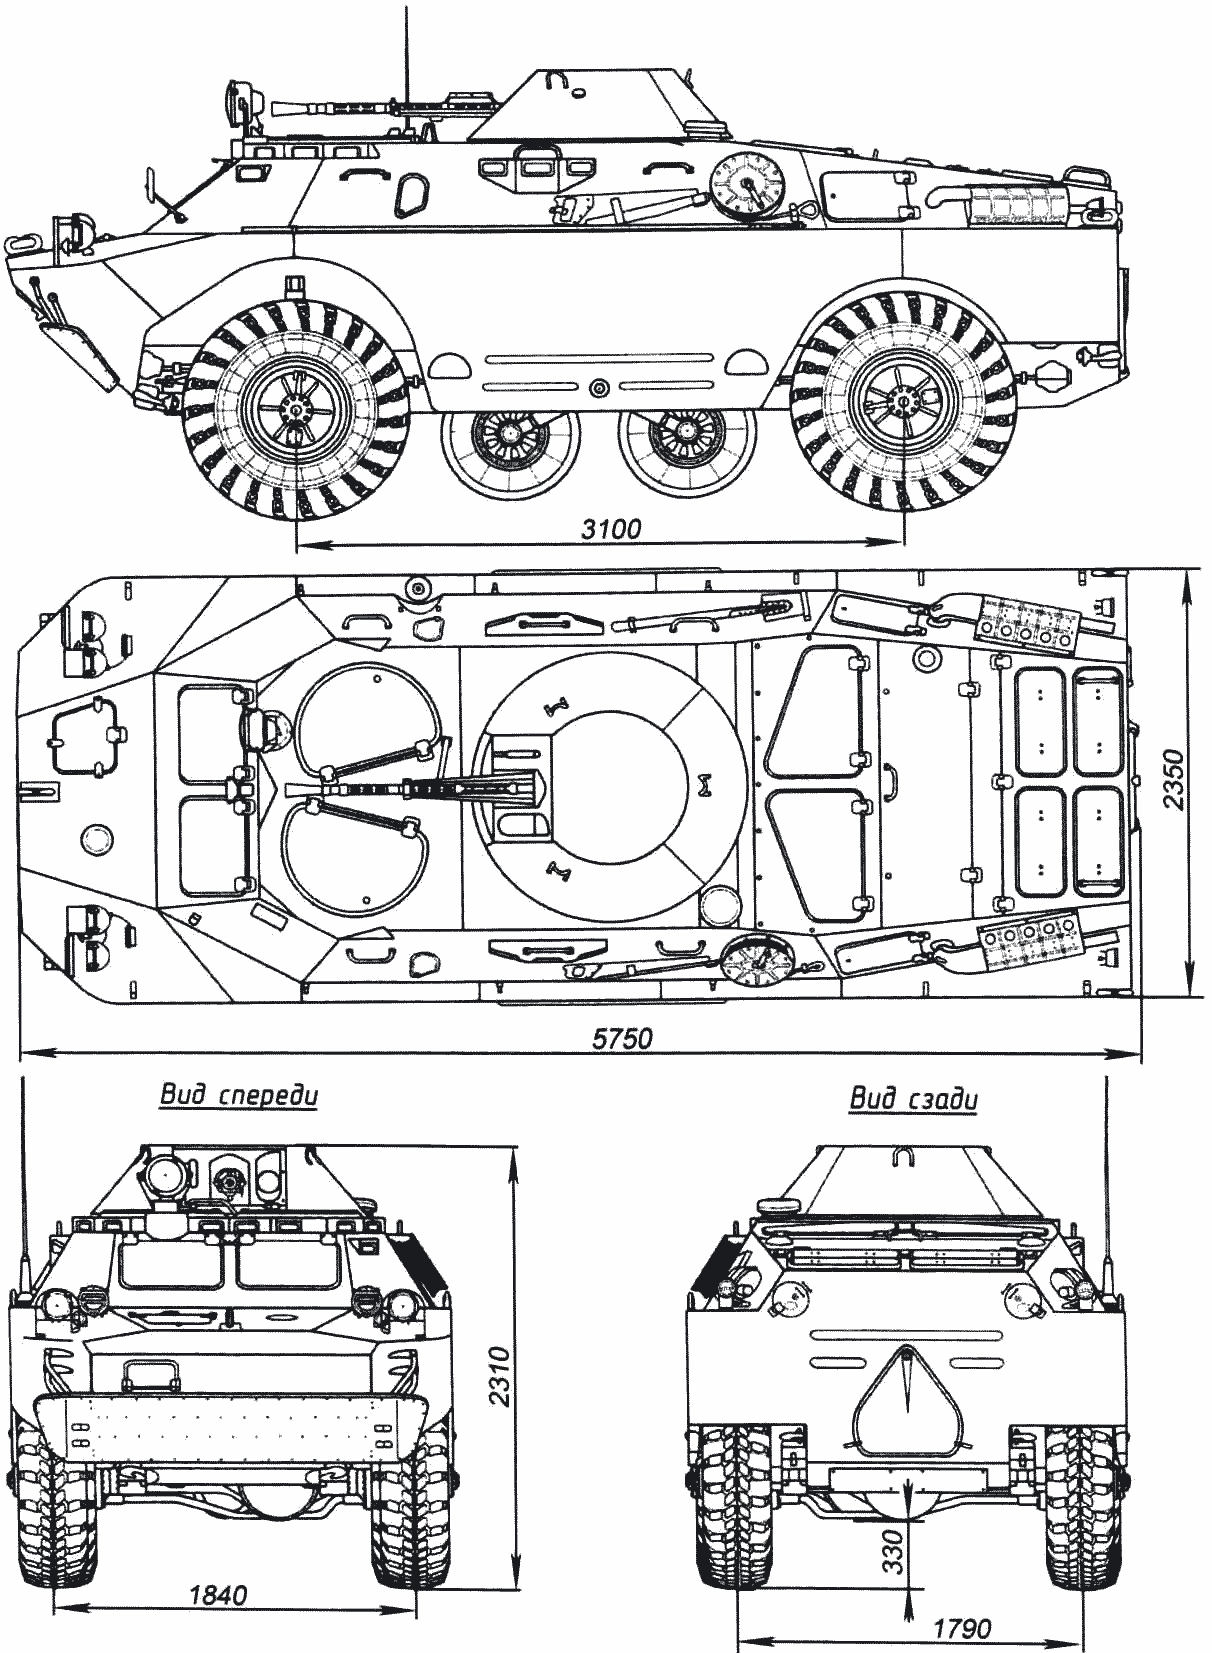 BRDM-2 blueprint